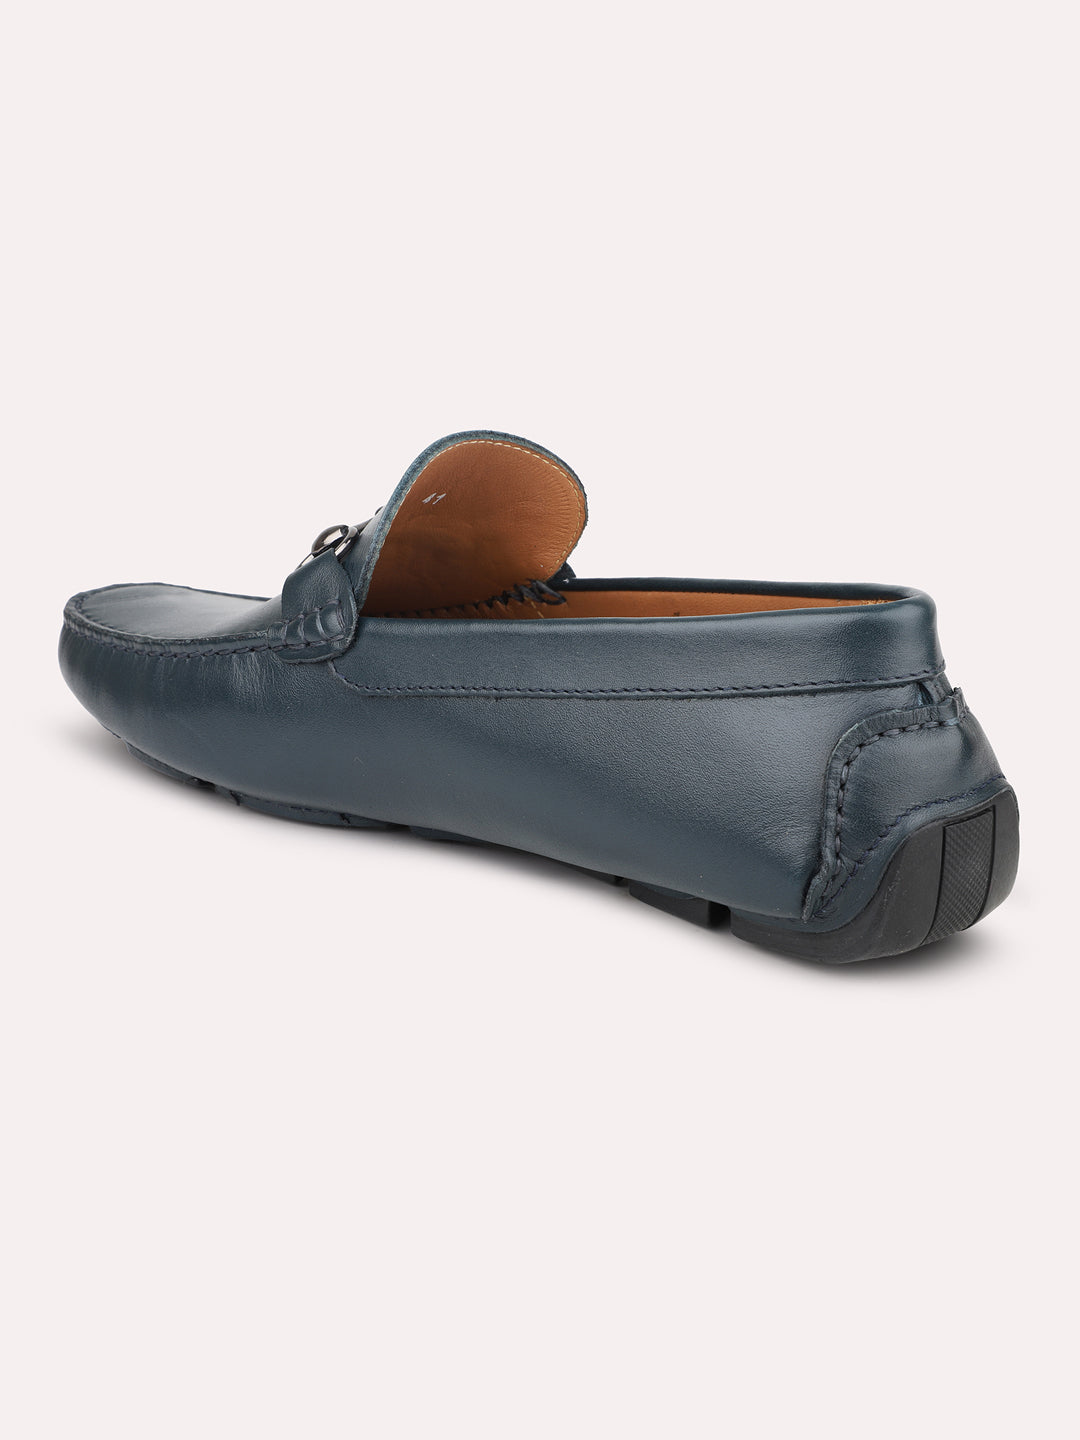 Atesber Blue Loafer Driving Shoes For Men